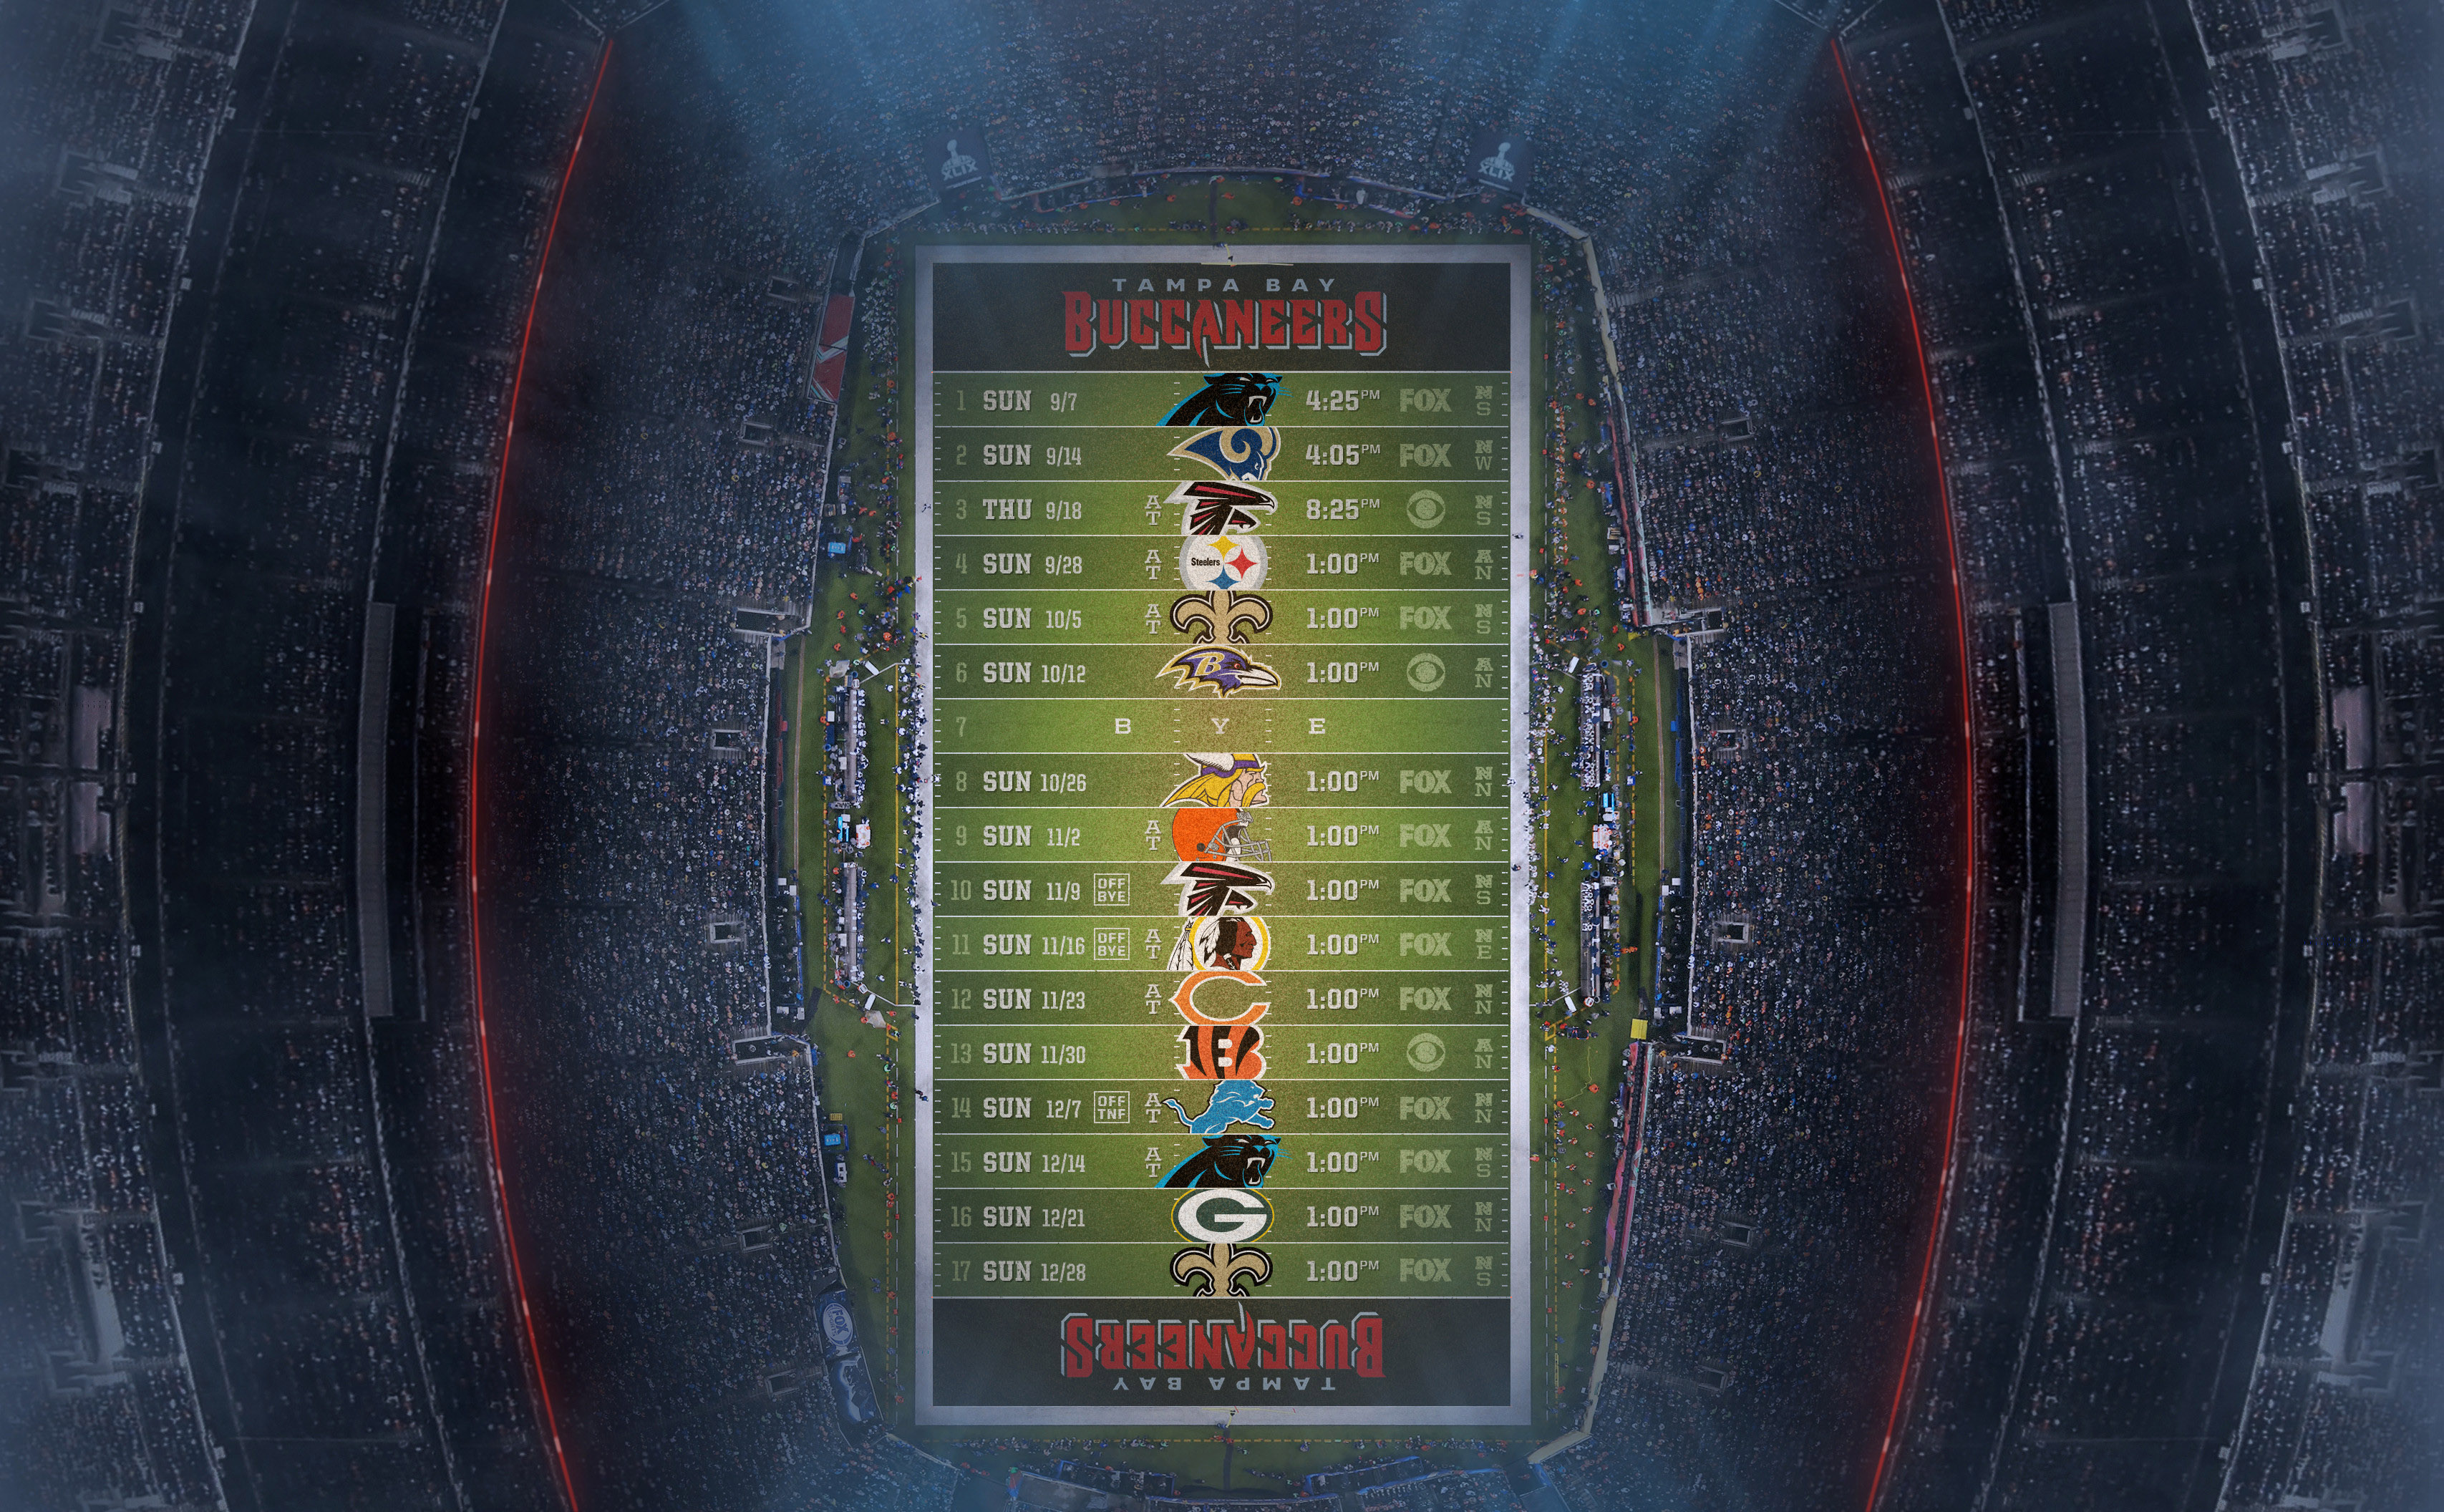 Tampa Bay Buccaneers 2014 NFL Schedule Wallpaper